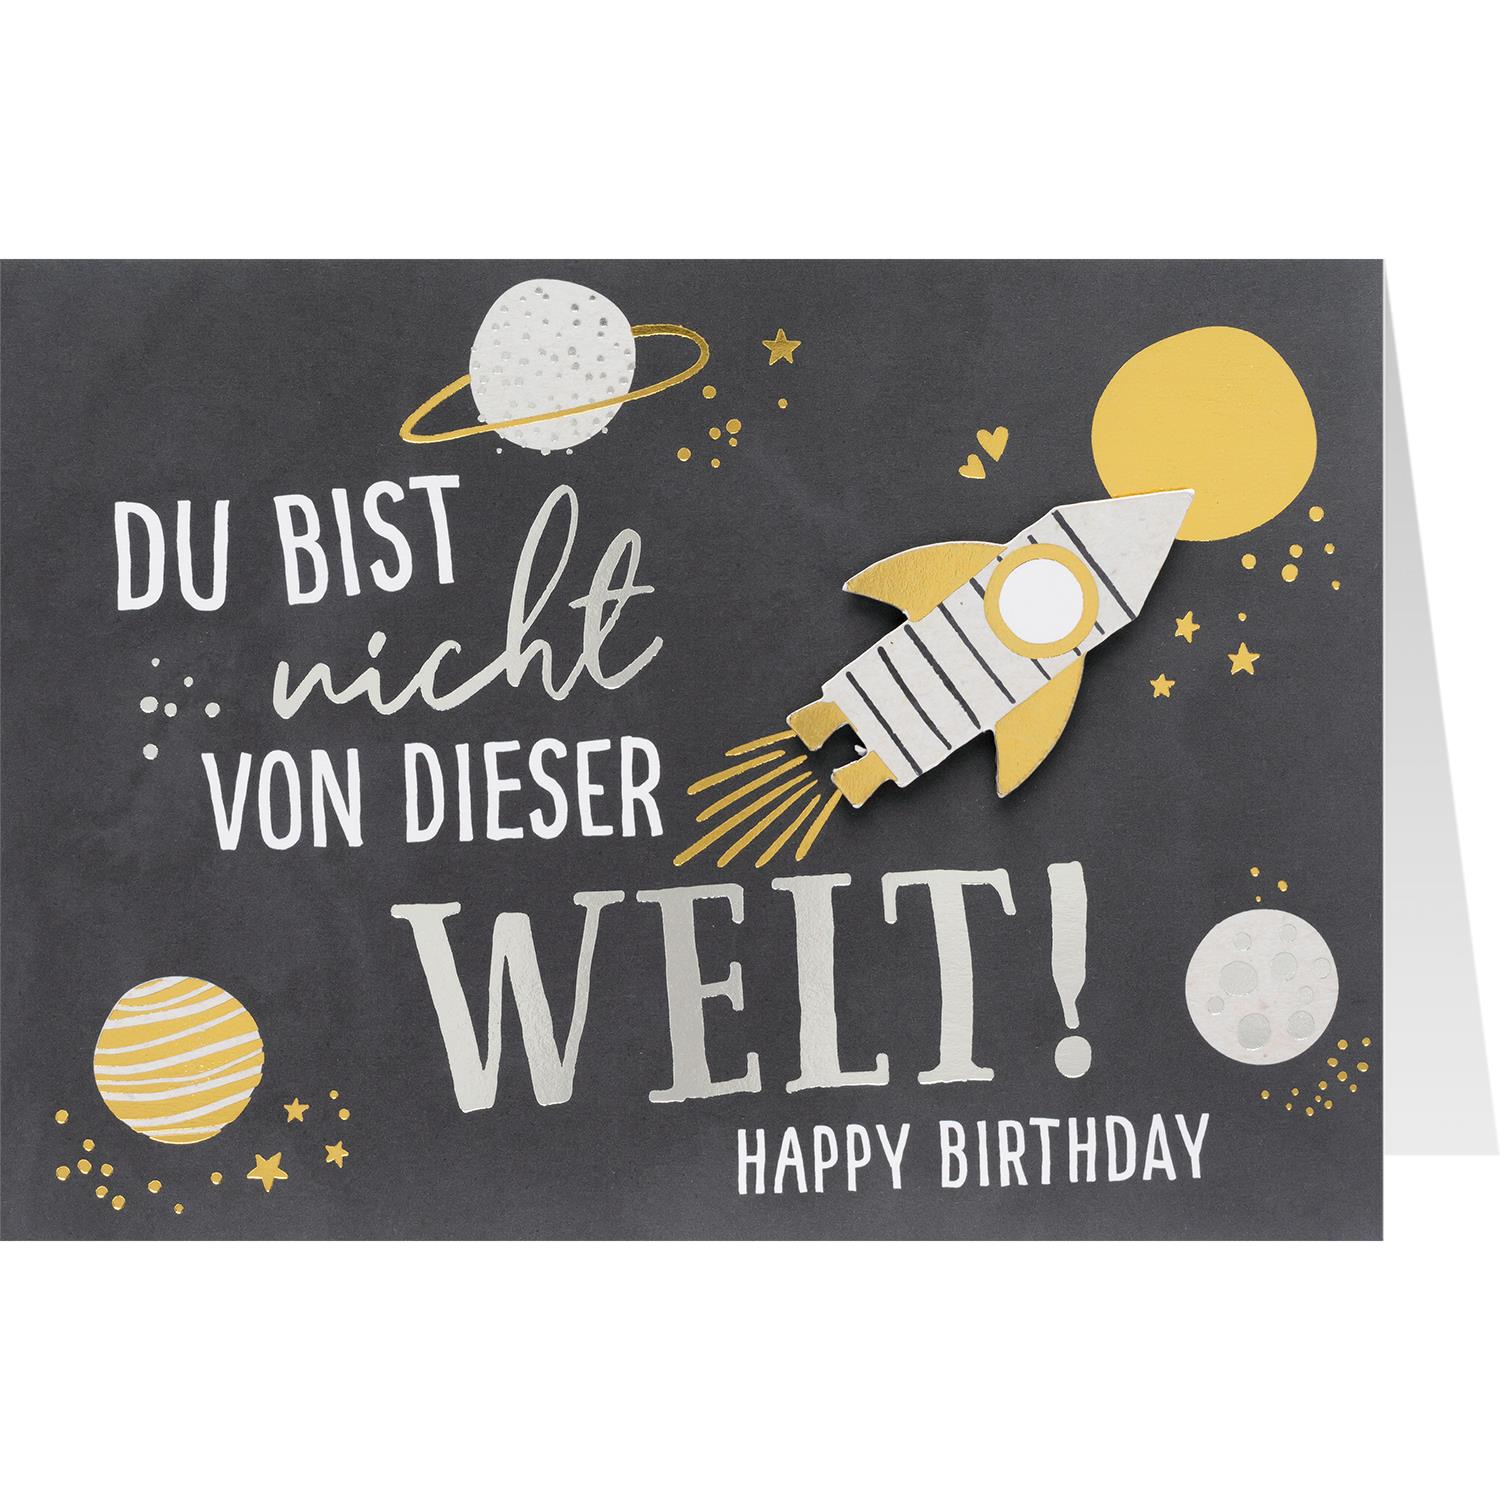 Grußkarte «DU BIST nicht von dieser WELT! - HAPPY BIRTHDAY«